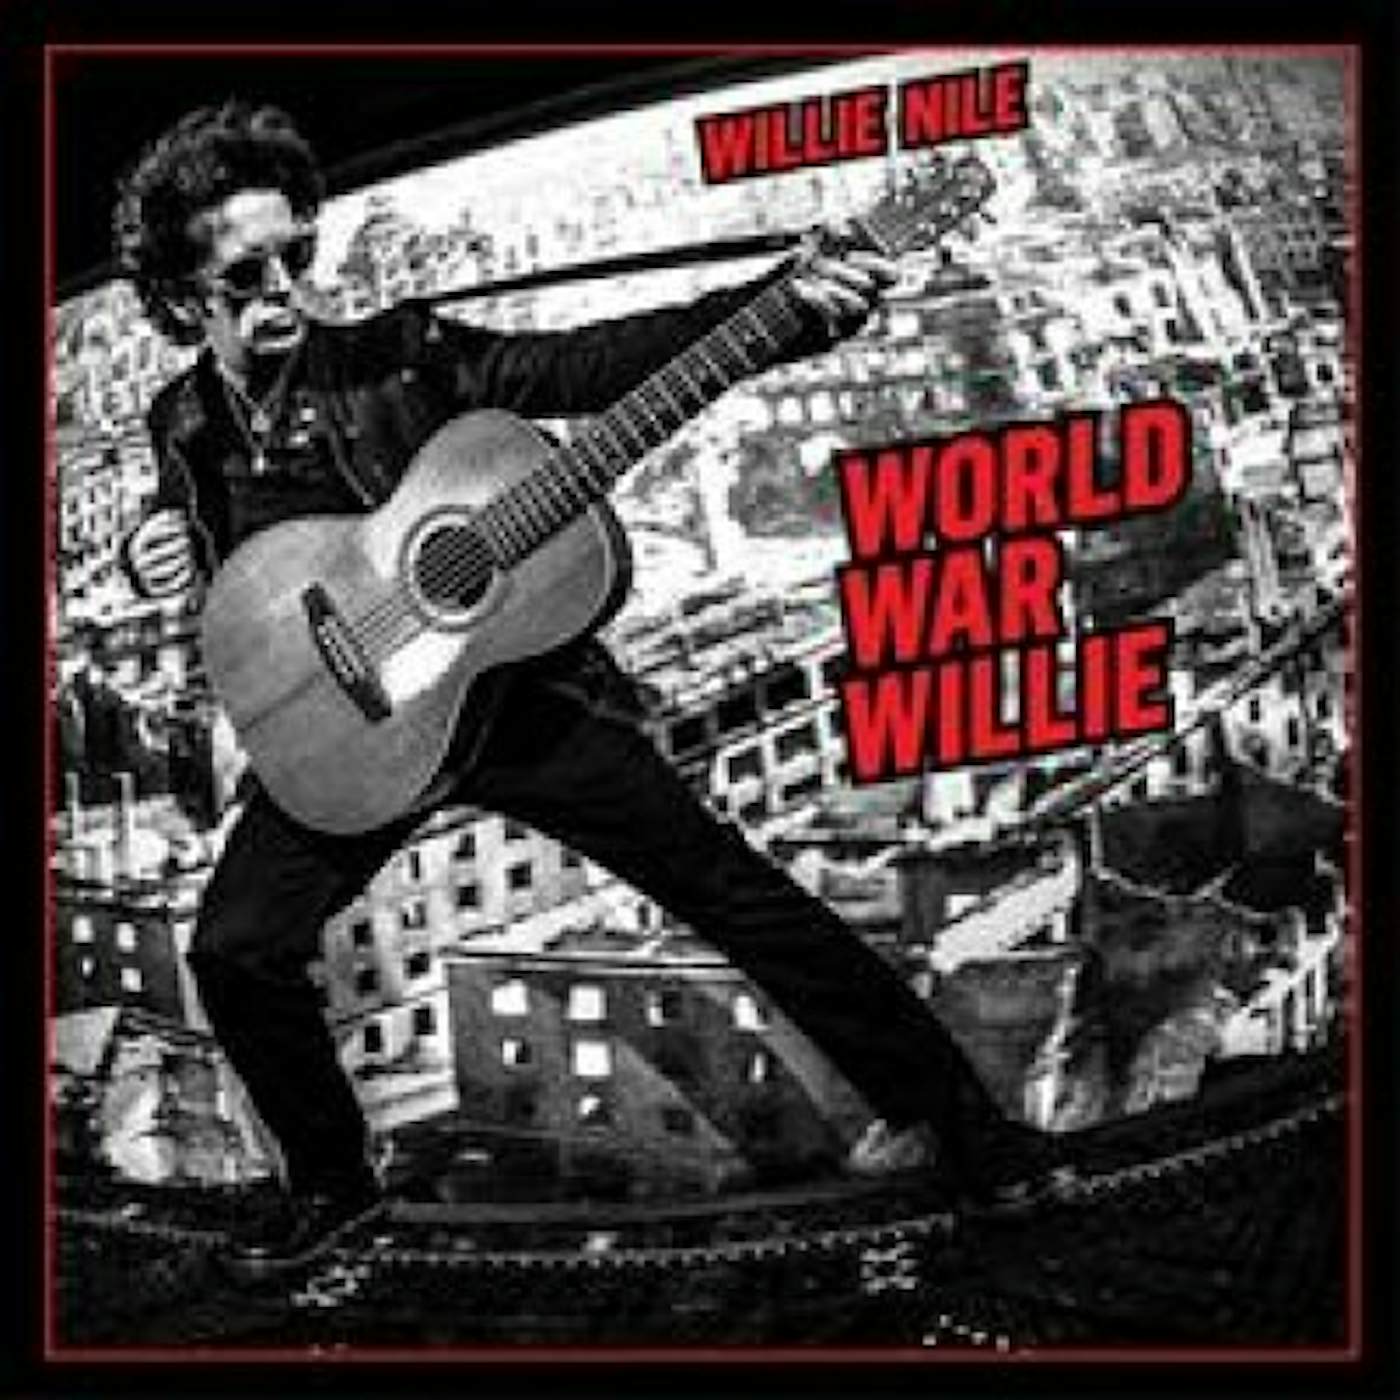 Willie Nile WORLD WAR WILLIE CD